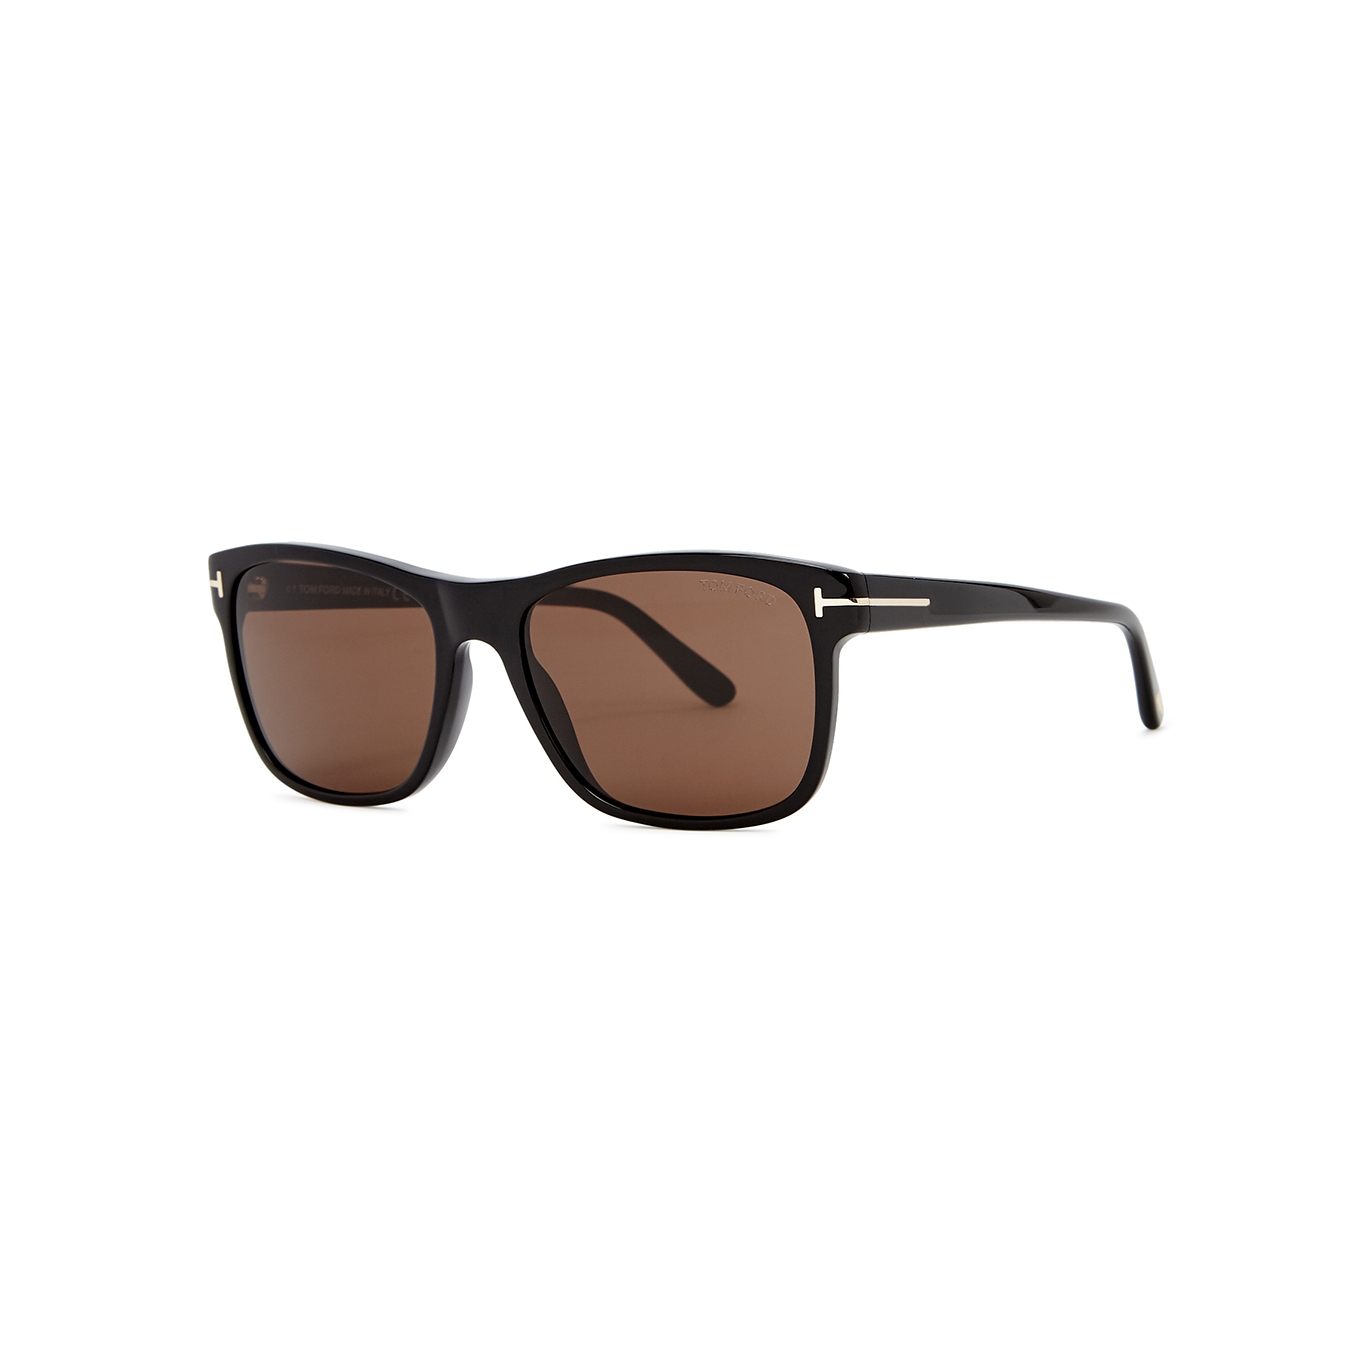 Tom Ford Black Square-frame Sunglasses, Sunglasses, Brown Lenses